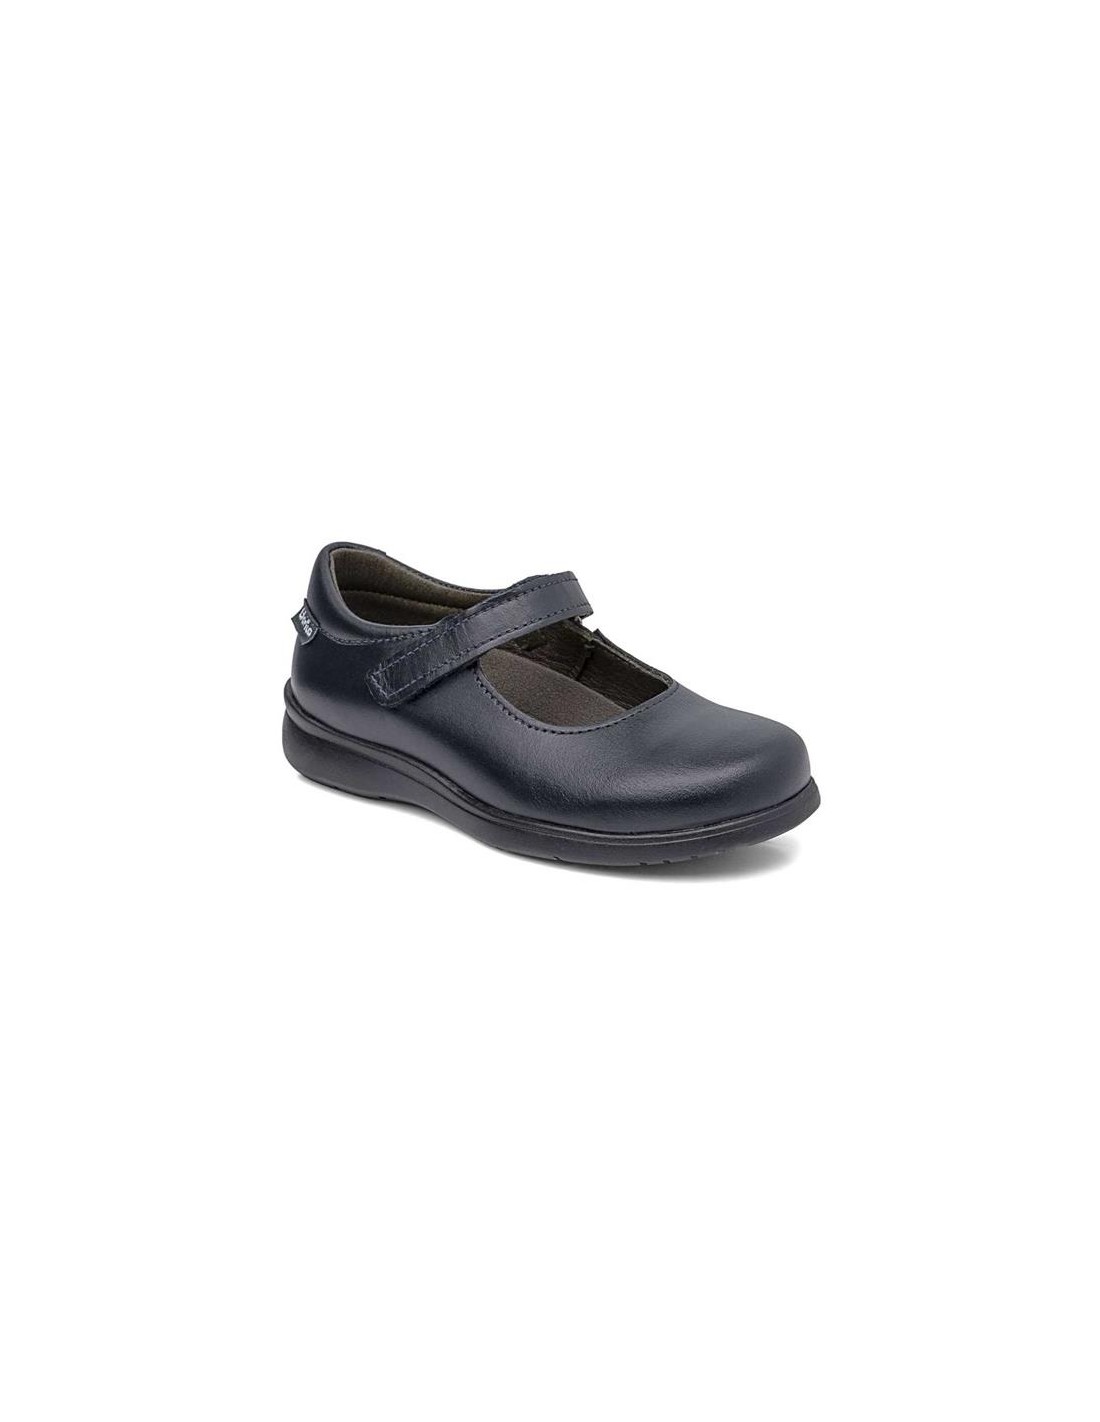 Zapato colegio Gorila Twister 1.4 mm negro niña